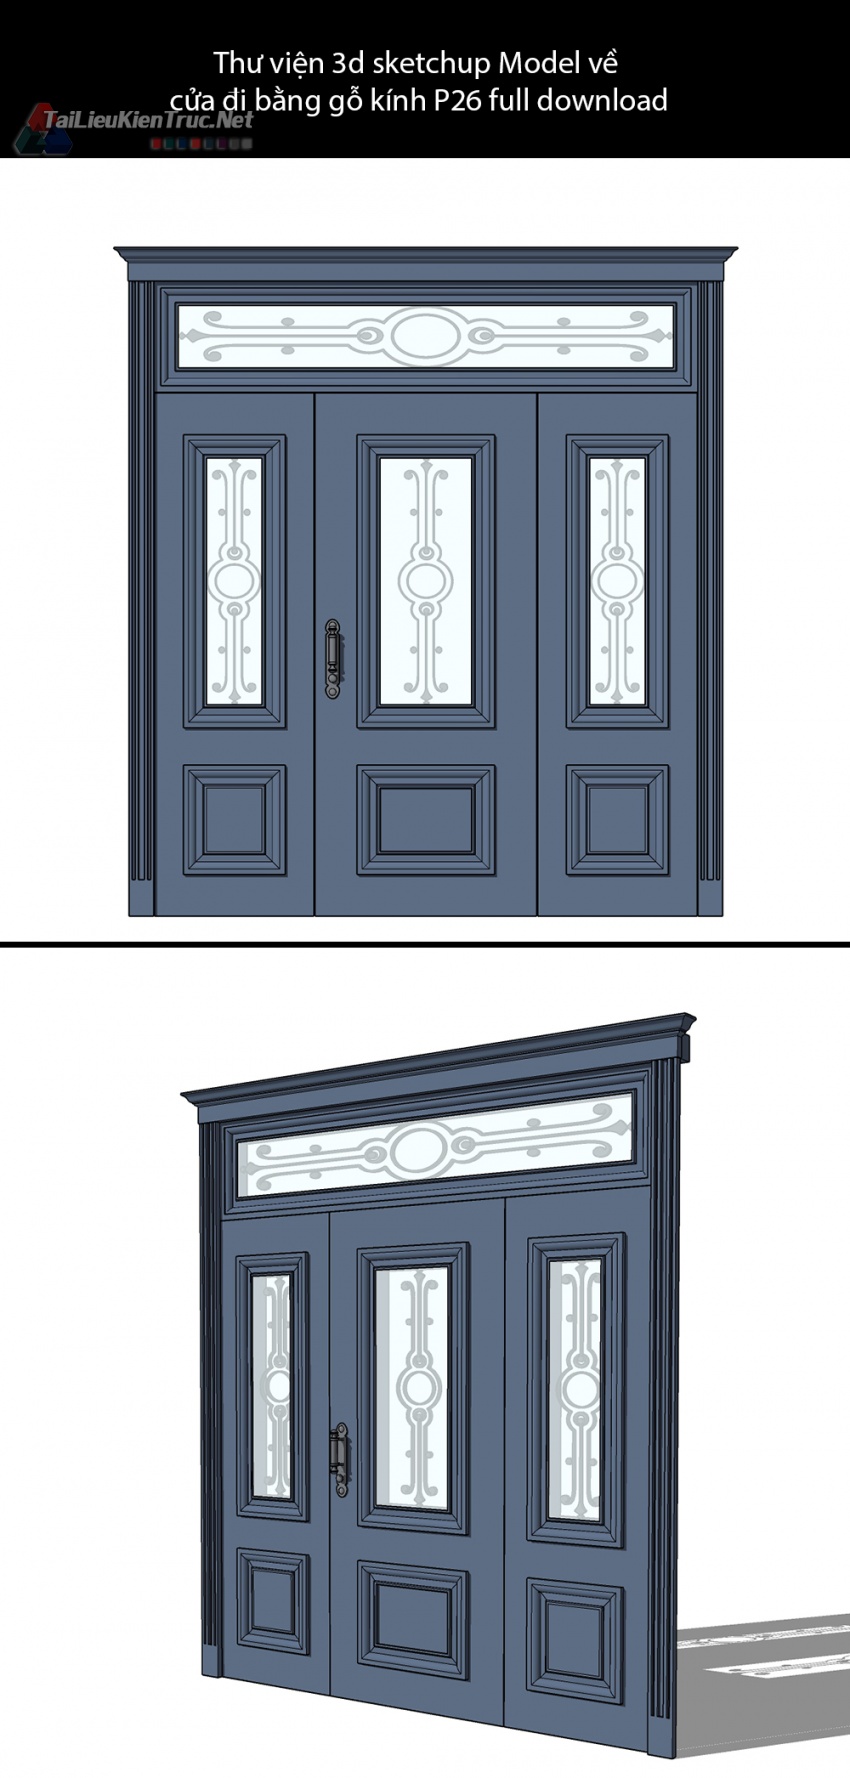 Thư viện 3d sketchup Model về cửa đi bằng gỗ kính P26 full download